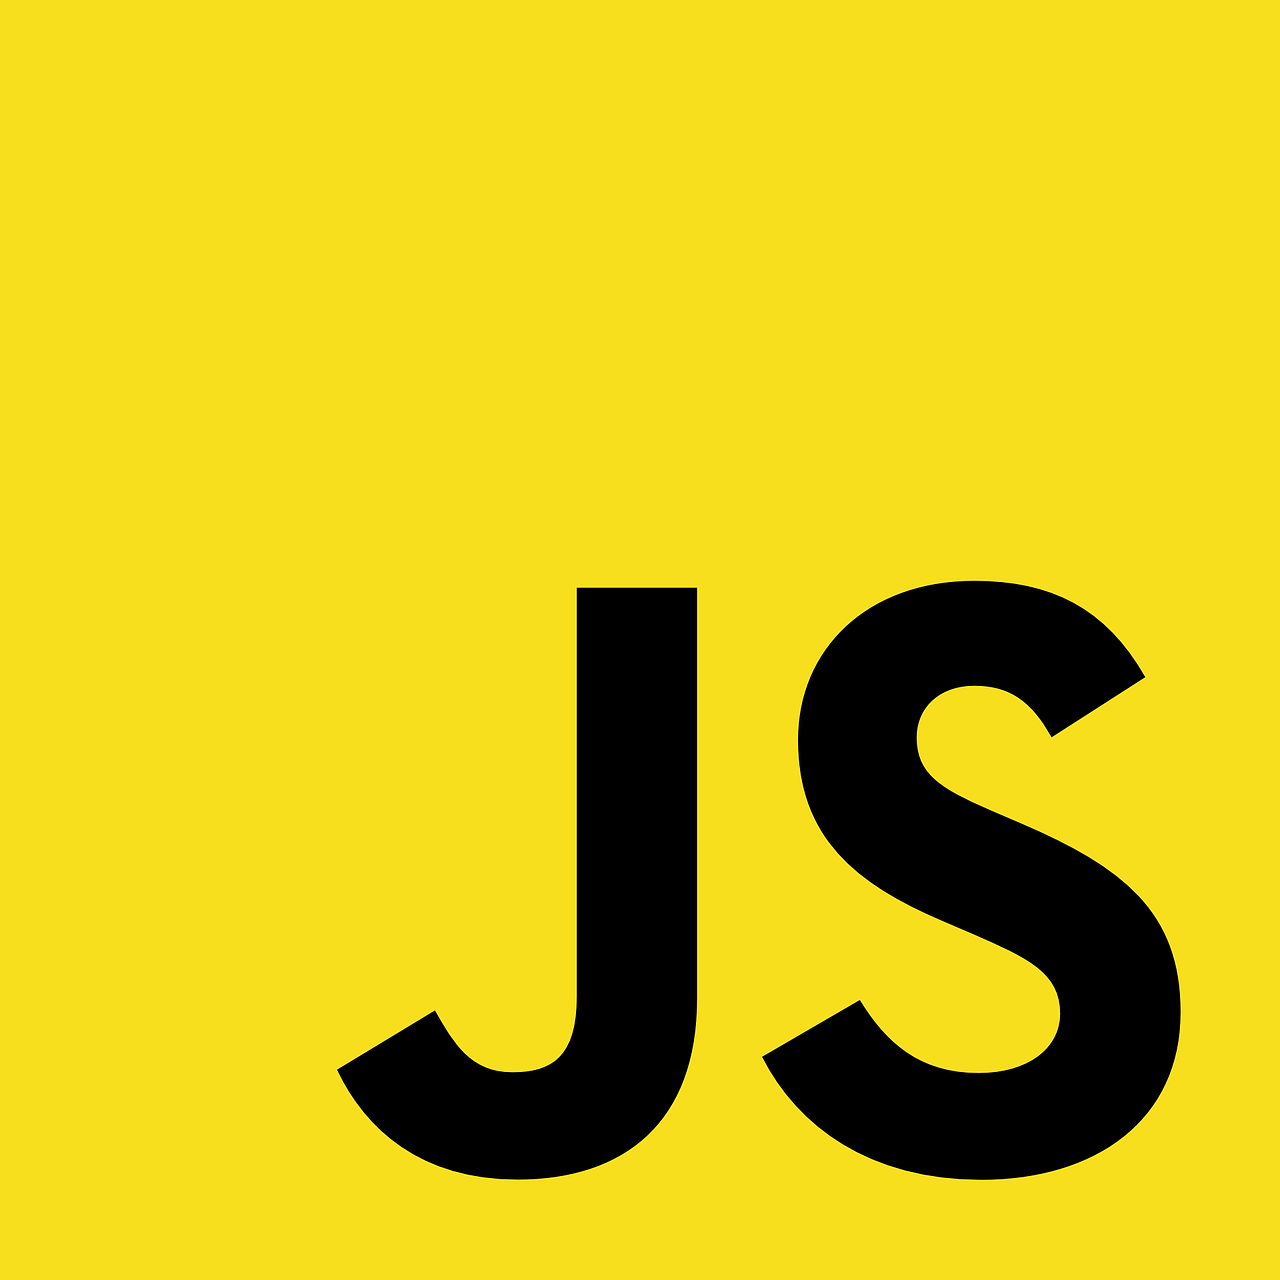 Javascript - Class 6 - Quizizz